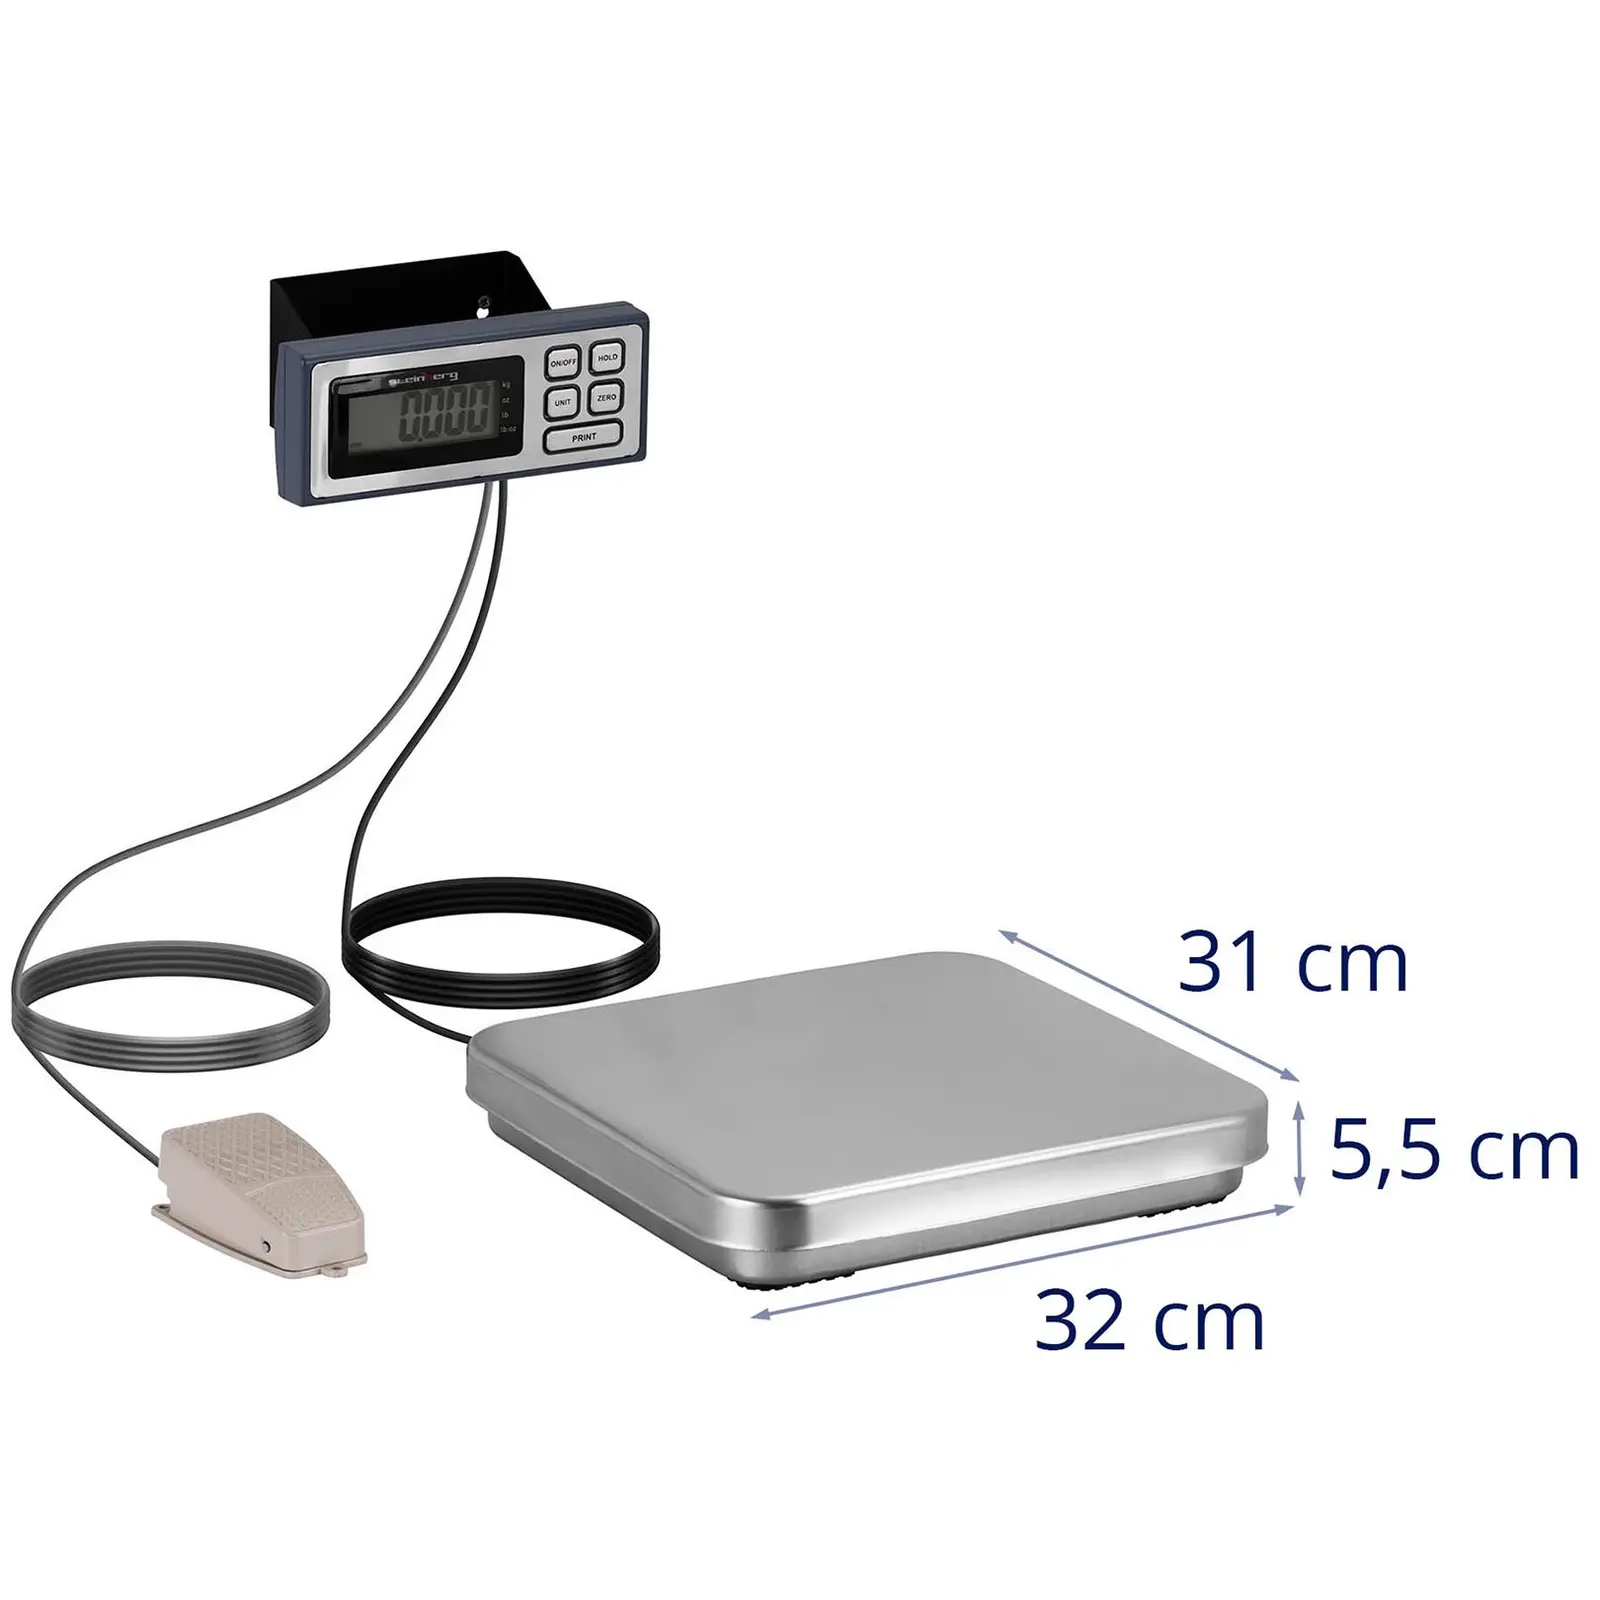 Digitálna kuchynská váha - nožný pedál - 10 kg / 2 g - 320 x 310 mm - LCD